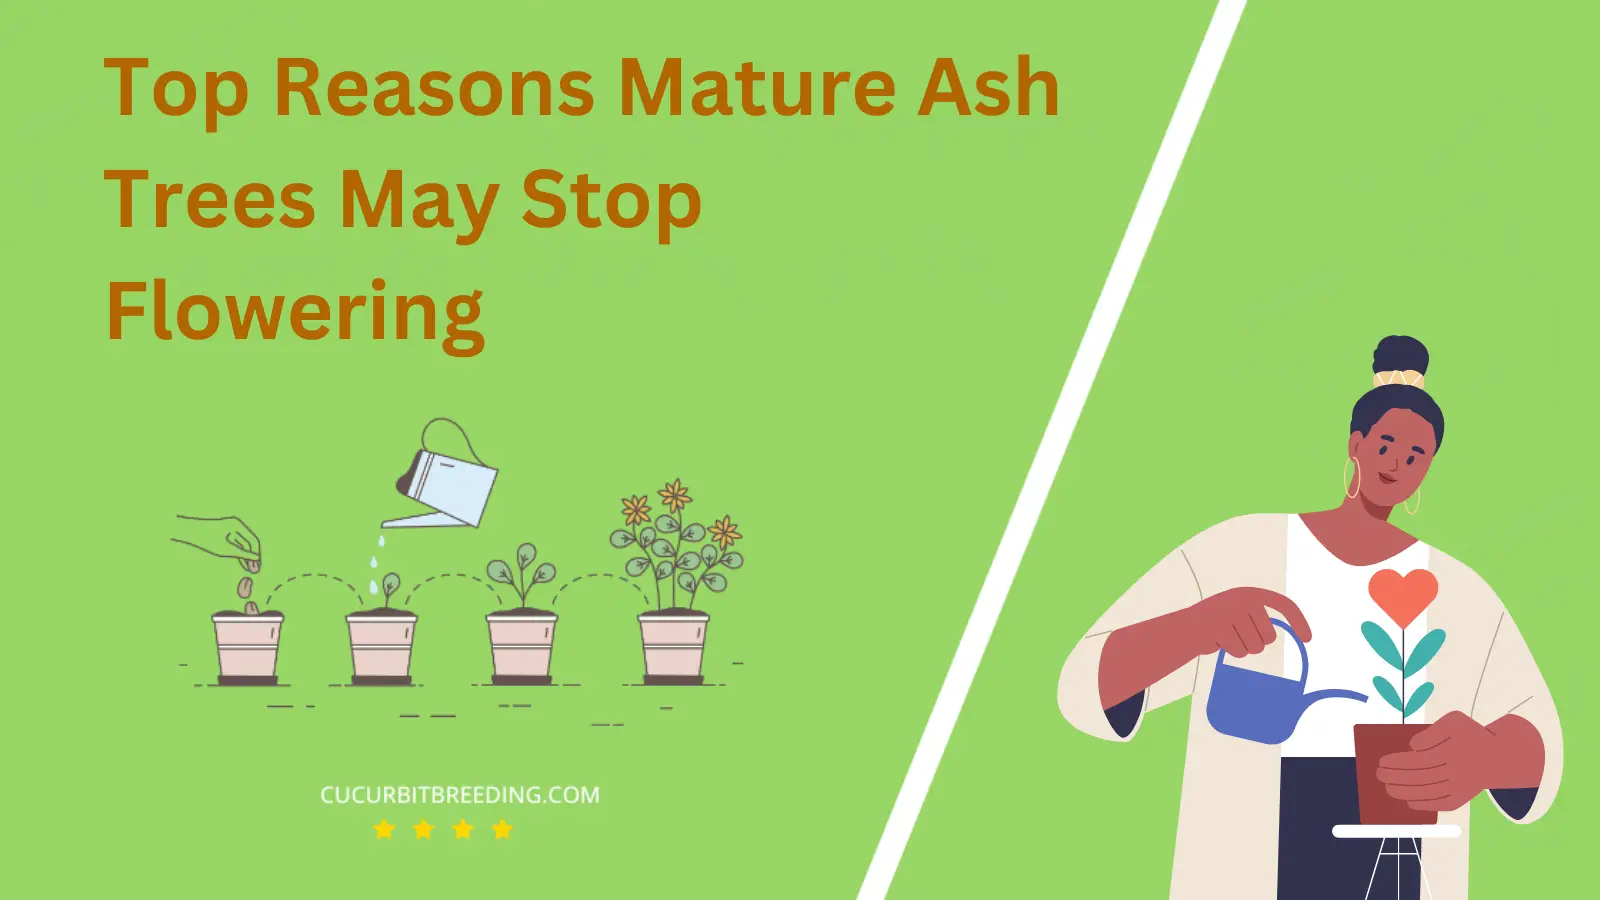 Top Reasons Mature Ash Trees May Stop Flowering